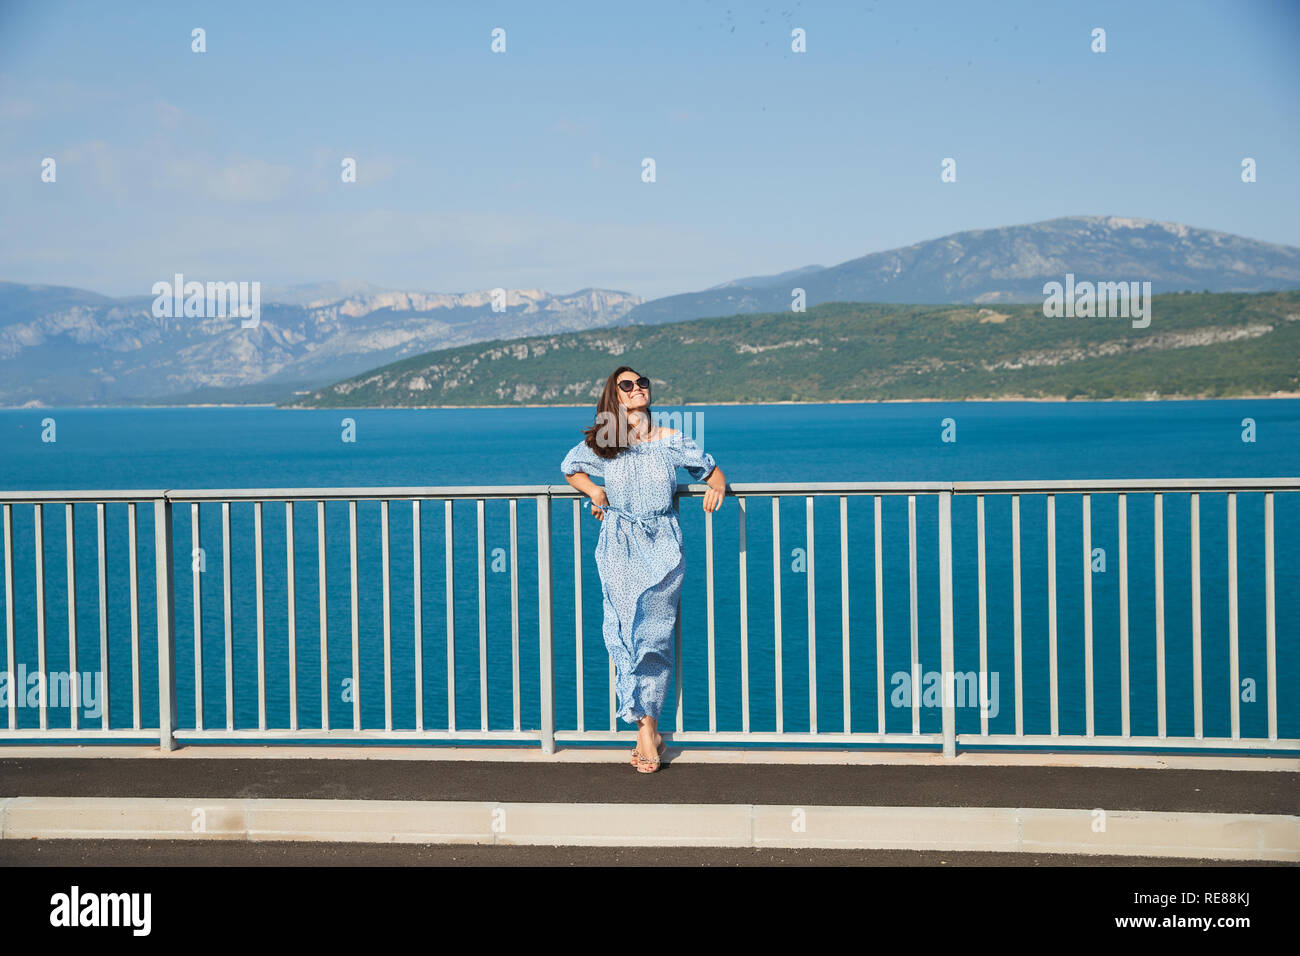 La hermosa chica en un vestido azul y gafas de sol posa sobre el puente, el largo cabello castaño, felices y sonrisas, el agua azul del lago y pendientes Foto de stock